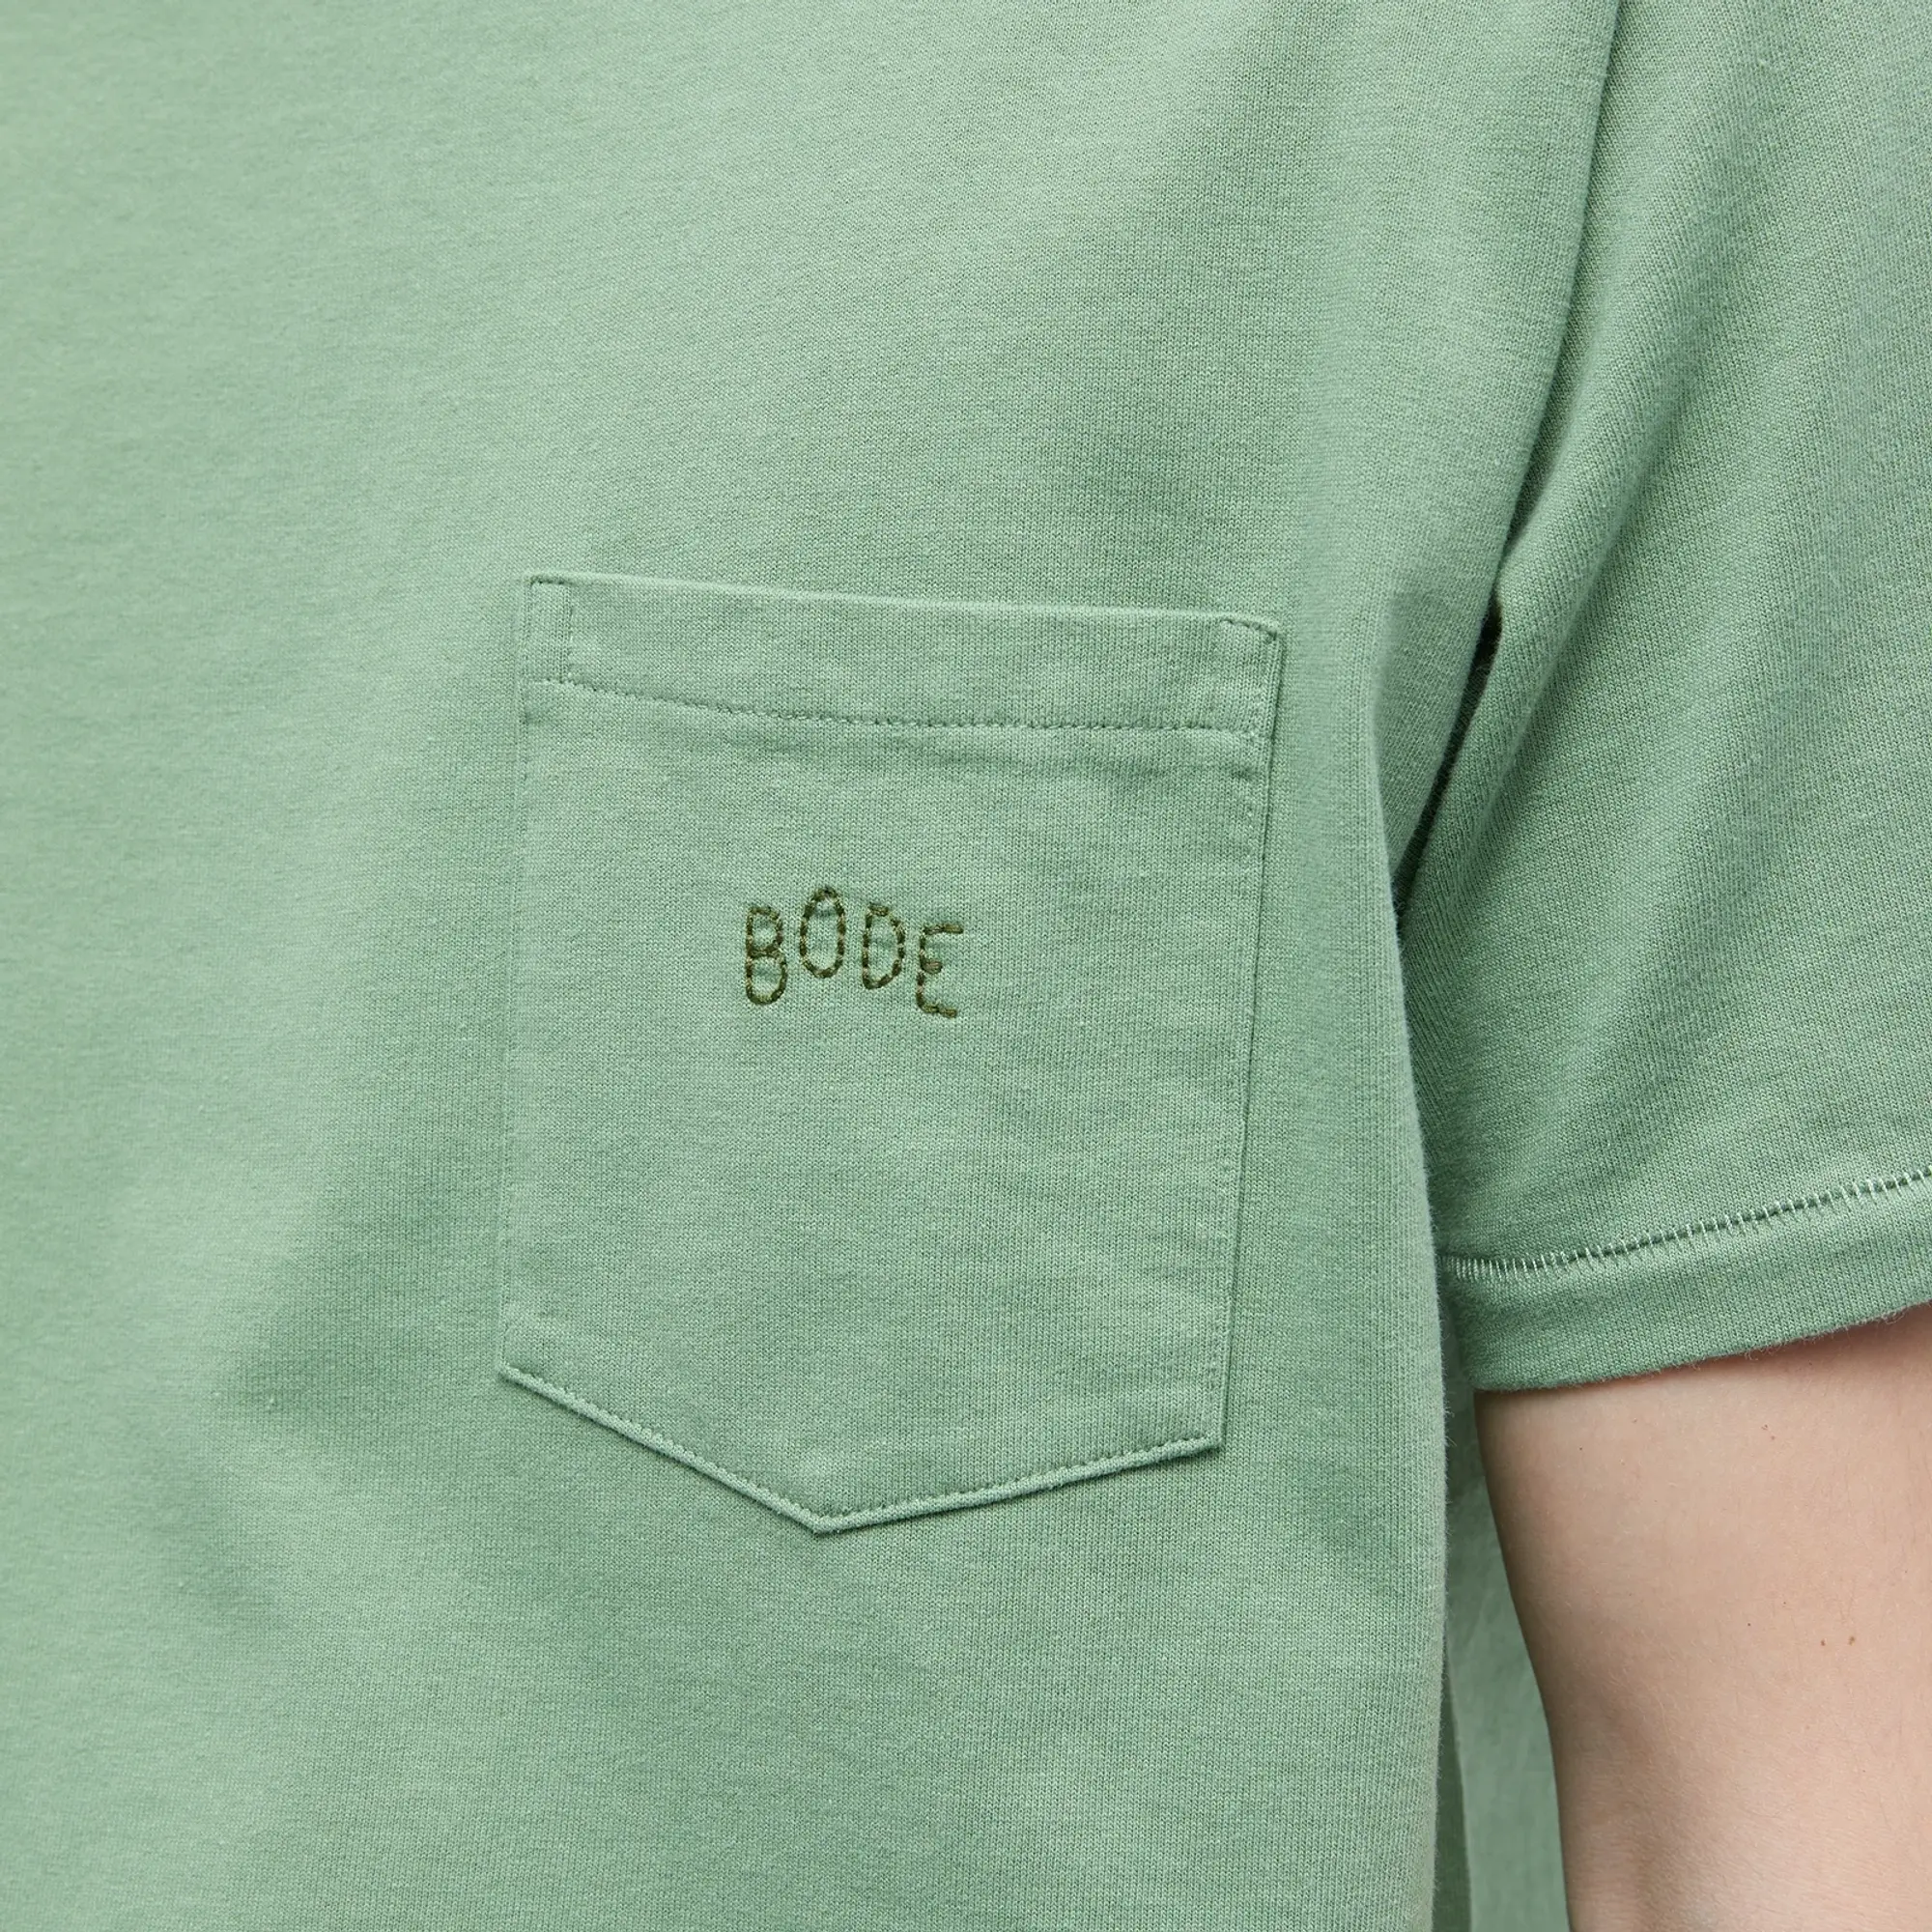 Bode Men's Bode Men's Pocket T-Shirt Ivy